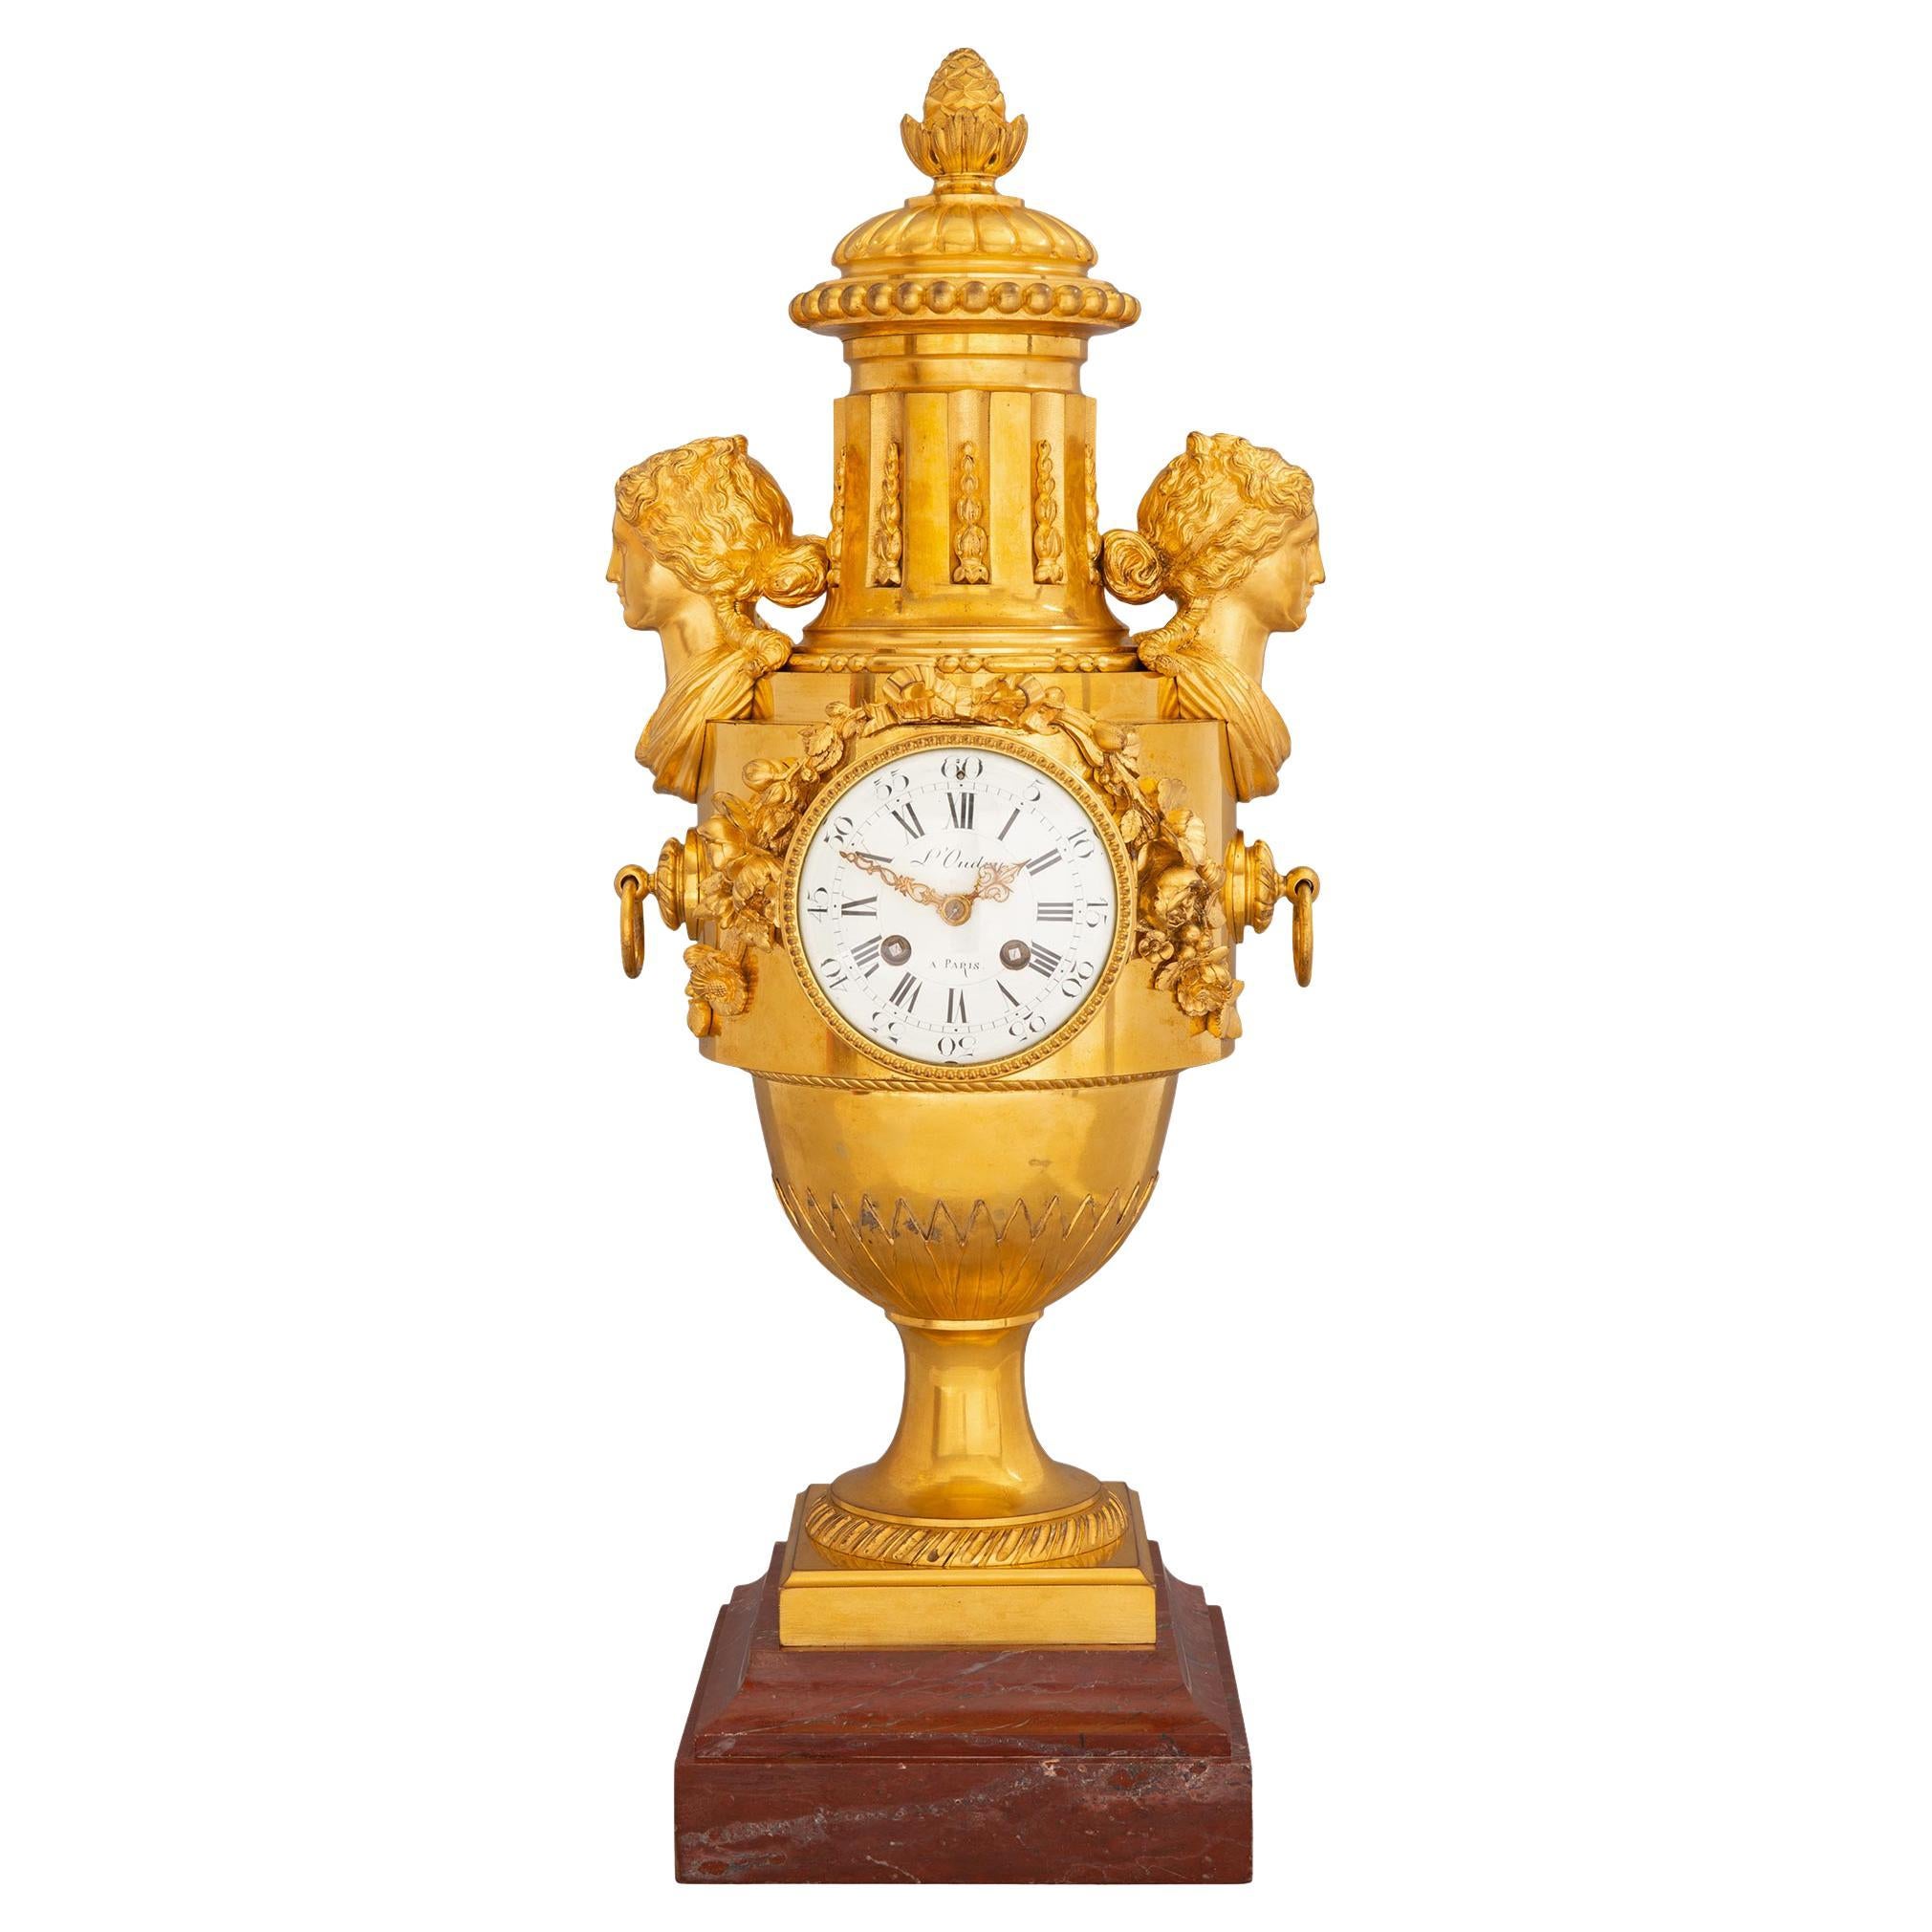  Horloge française de style Louis XVI du milieu du XIXe siècle en bronze doré et marbre rouge griotte